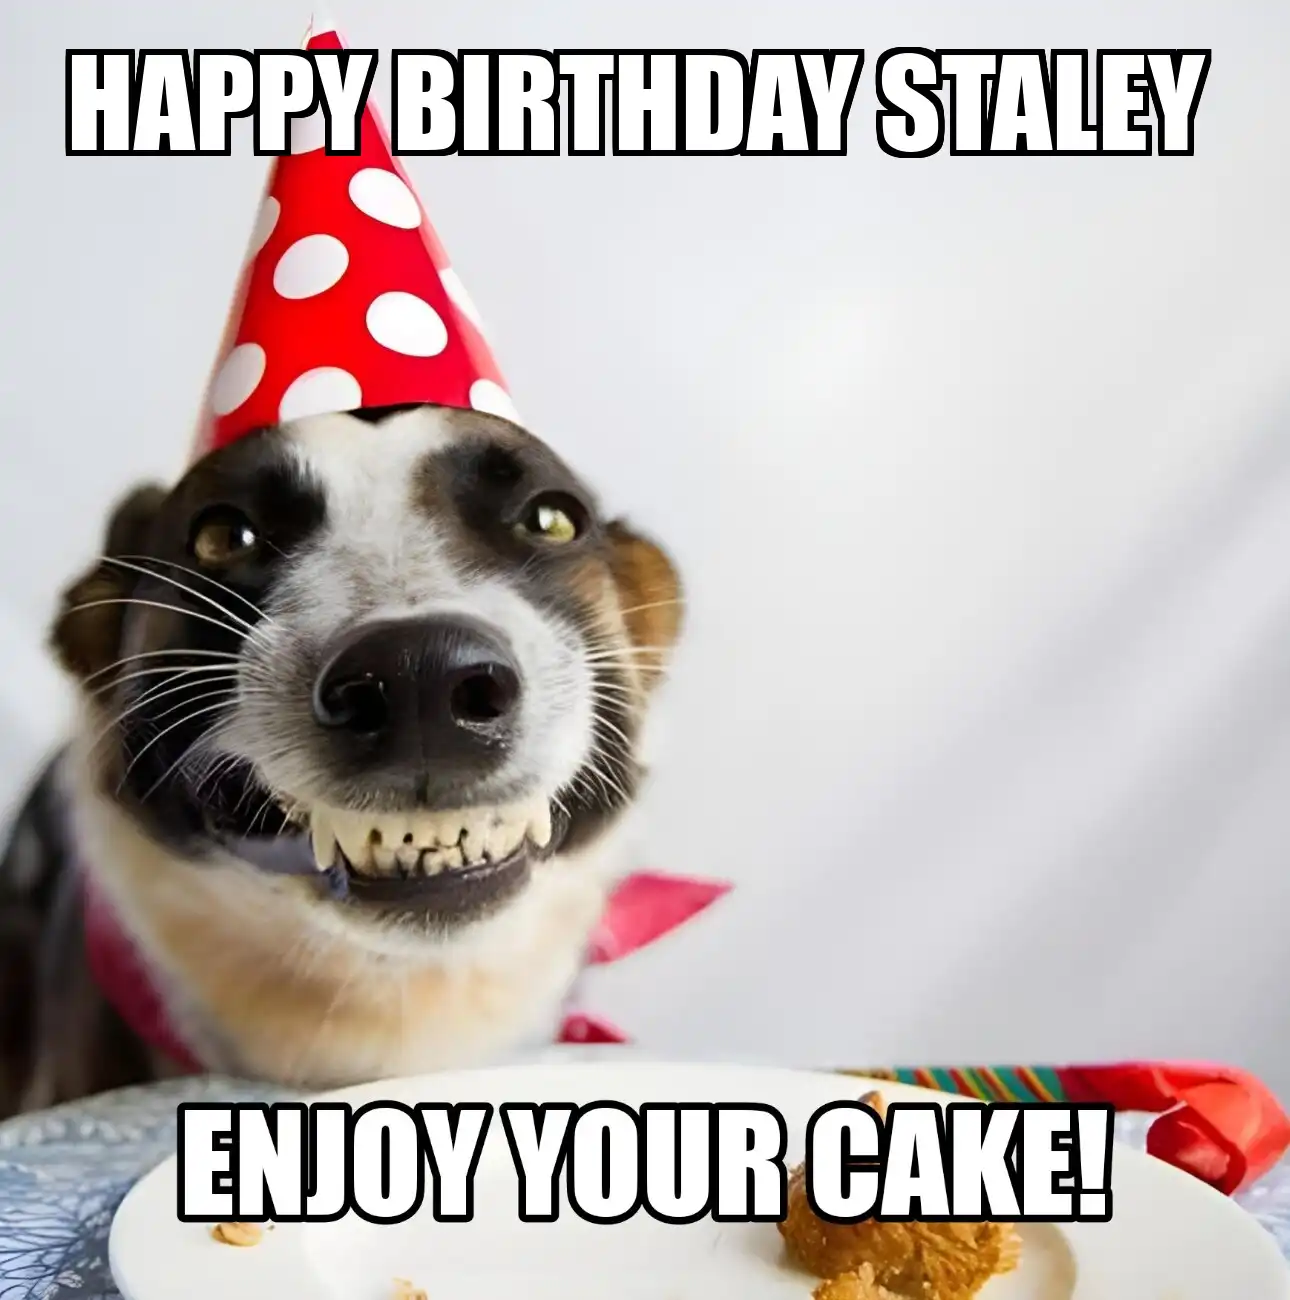 Happy Birthday Staley Enjoy Your Cake Dog Meme